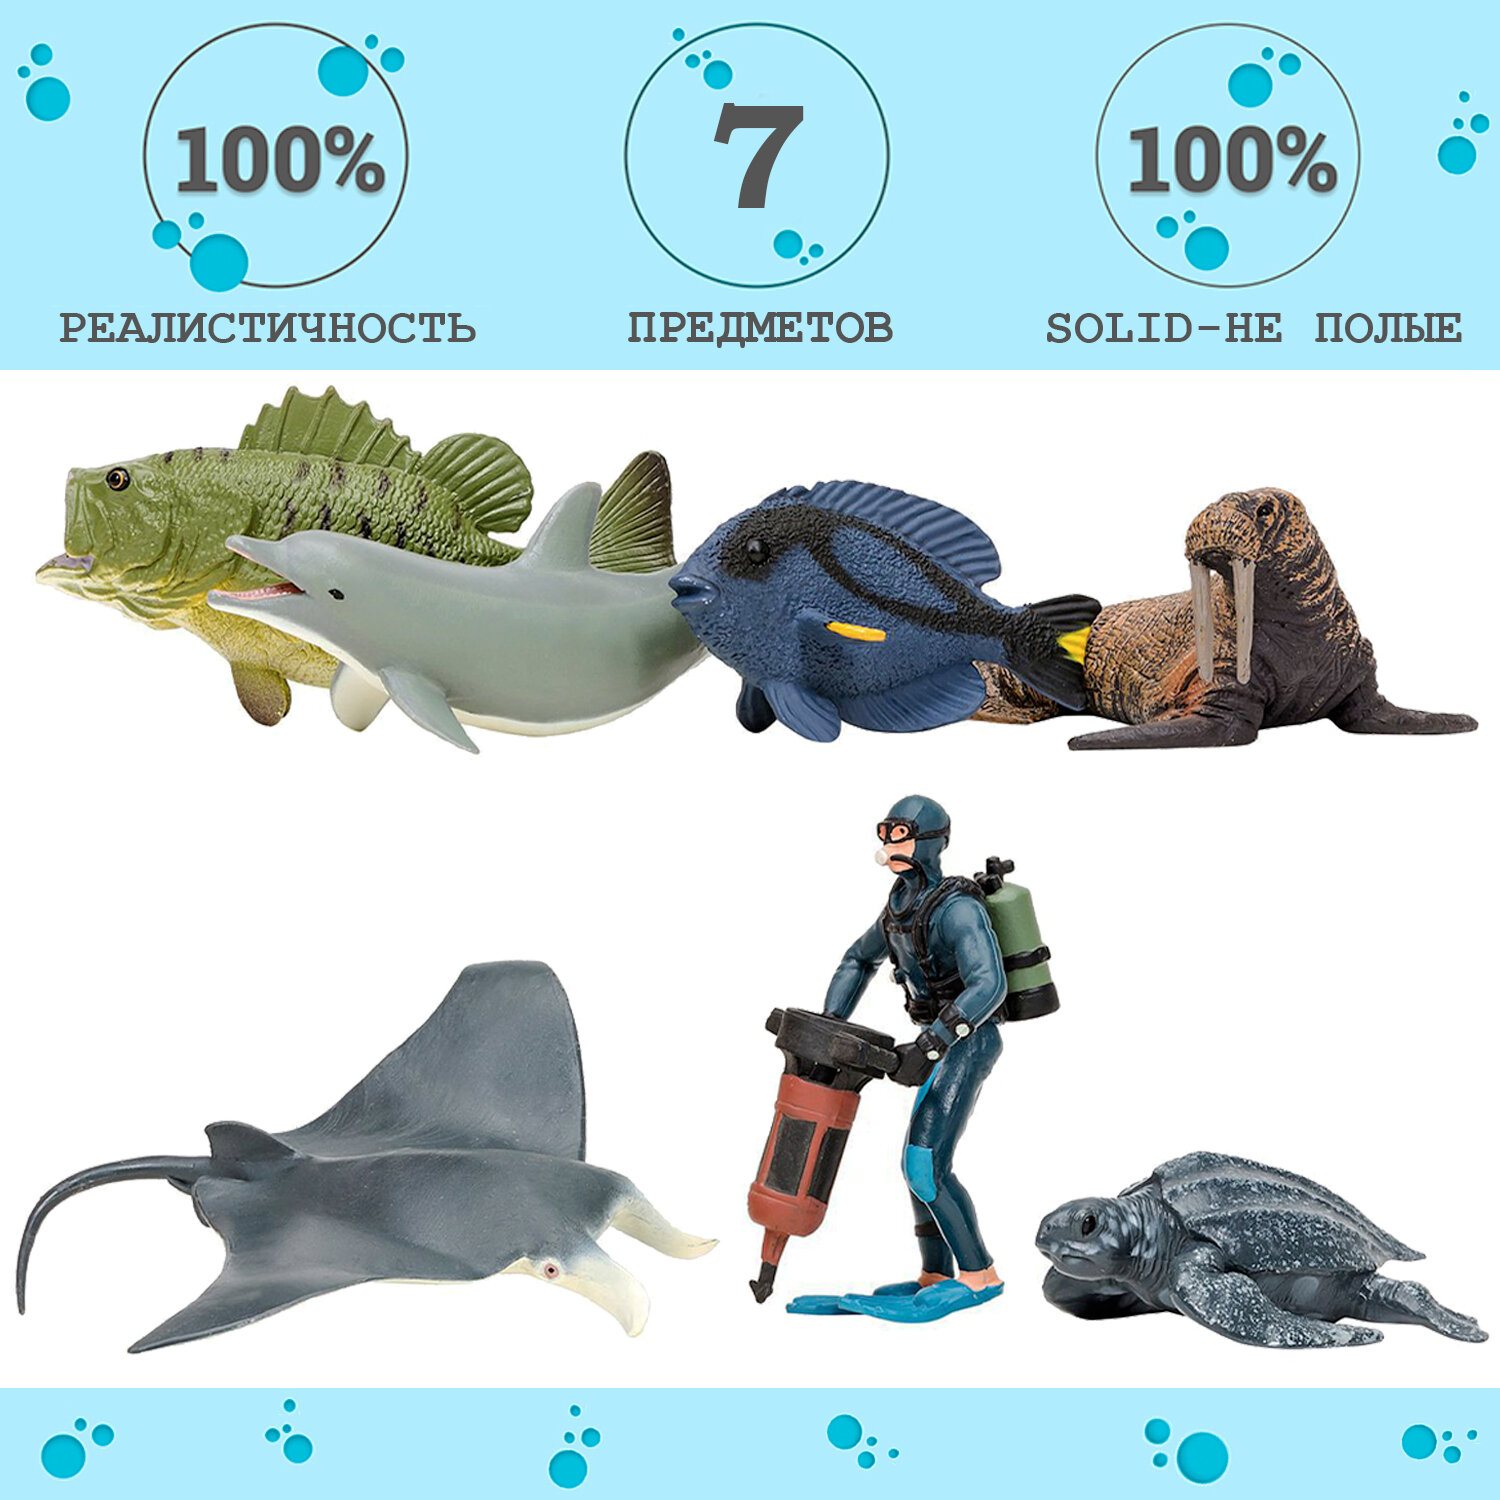 Фигурки игрушки серии "Мир морских животных": Манта, морж, кожистая черепаха, рыбка-хирург, дельфин, окунь, дайвер (набор из 6 фигурок животных и 1 ч